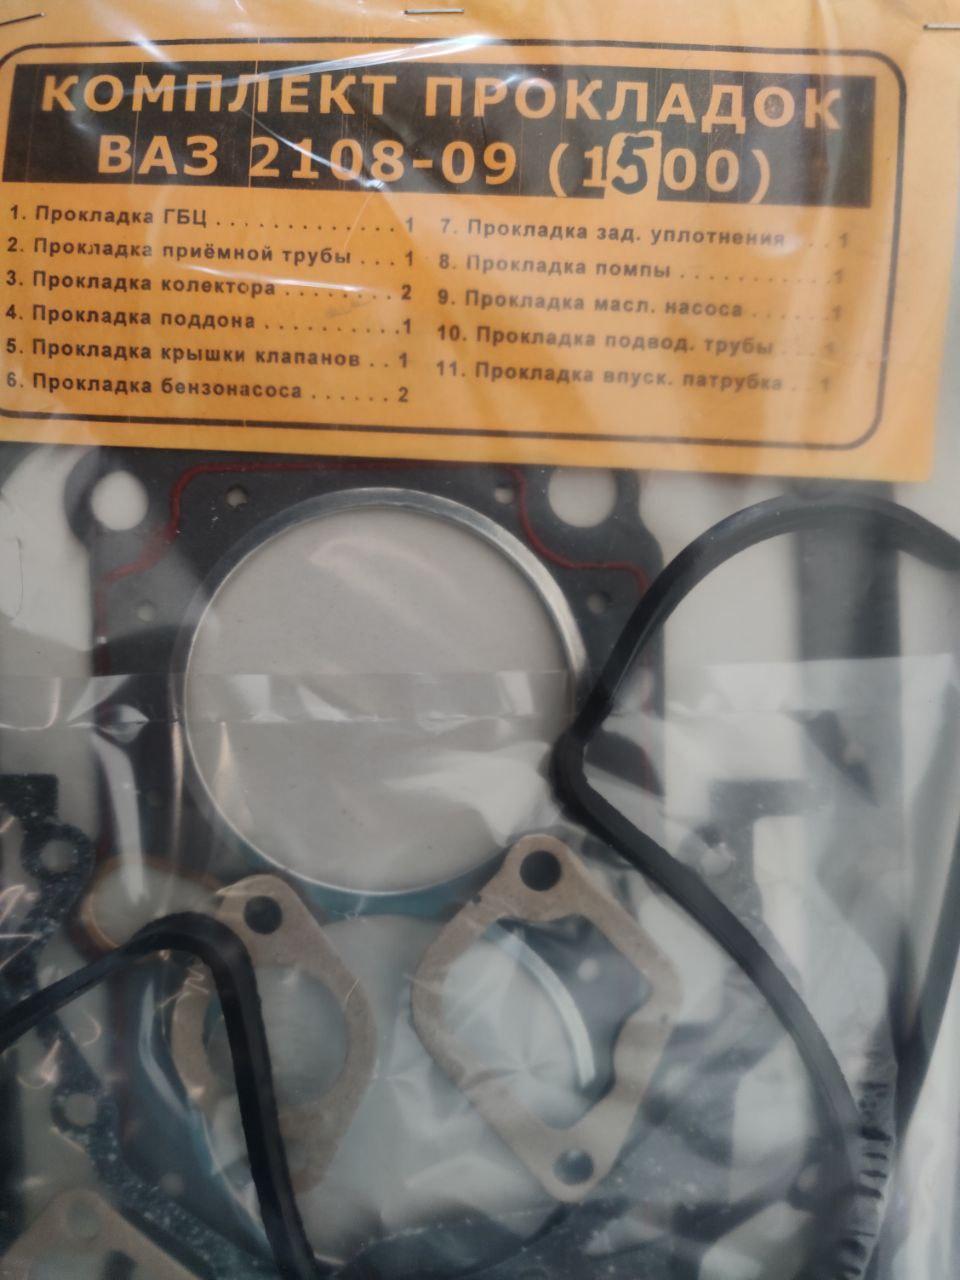 Комплект прокладок для ремонту двигуна ВАЗ 2108-09 (1500)